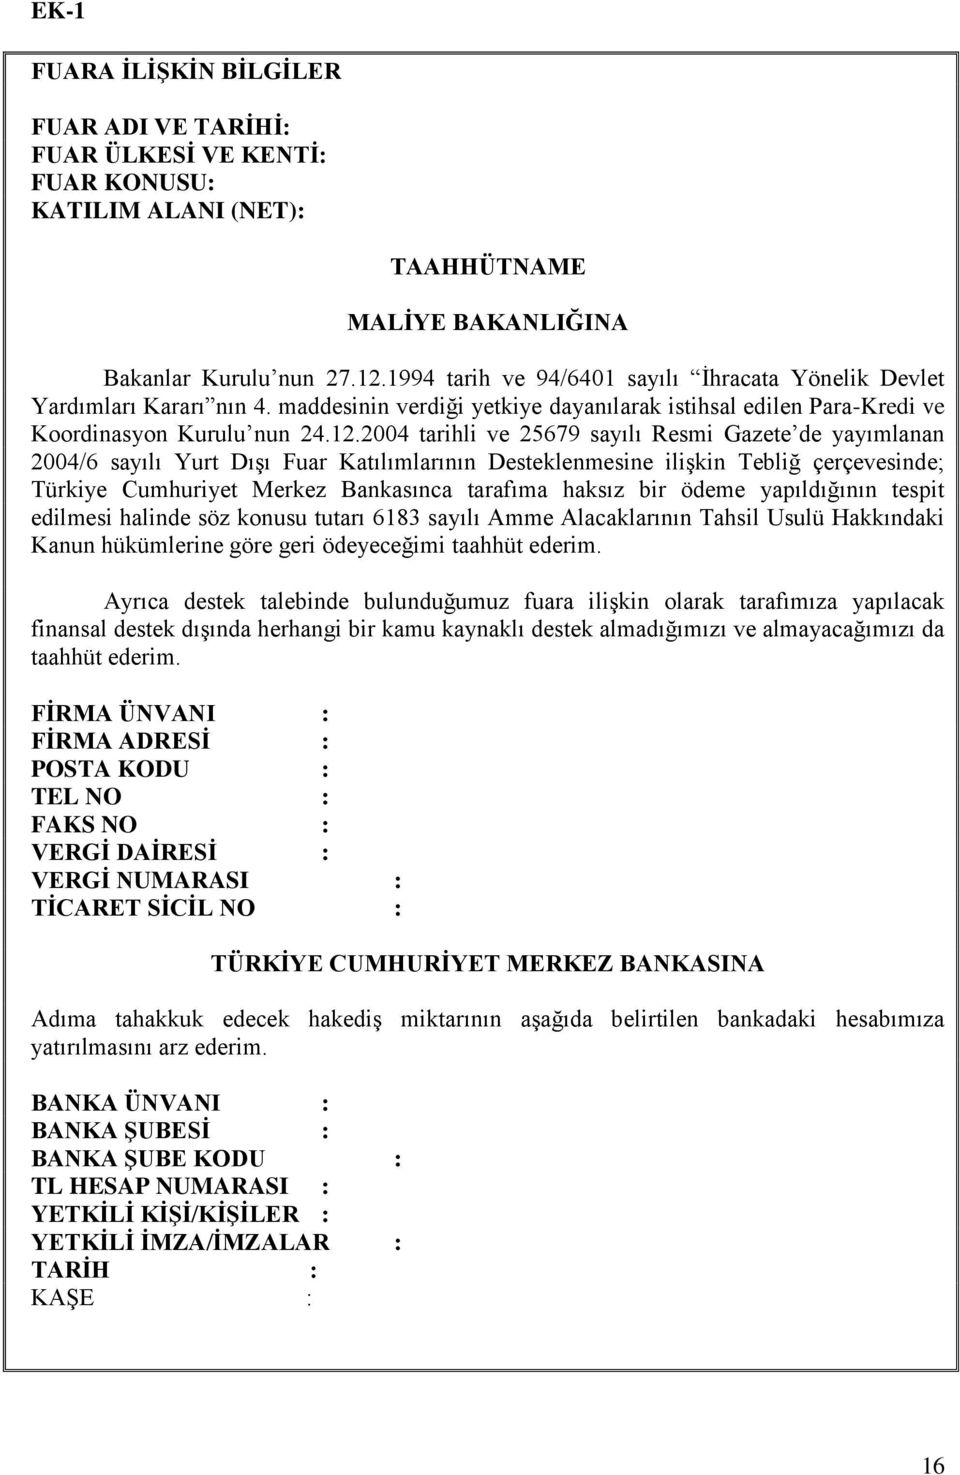 2004 tarihli ve 25679 sayılı Resmi Gazete de yayımlanan 2004/6 sayılı Yurt Dışı Fuar Katılımlarının Desteklenmesine ilişkin Tebliğ çerçevesinde; Türkiye Cumhuriyet Merkez Bankasınca tarafıma haksız